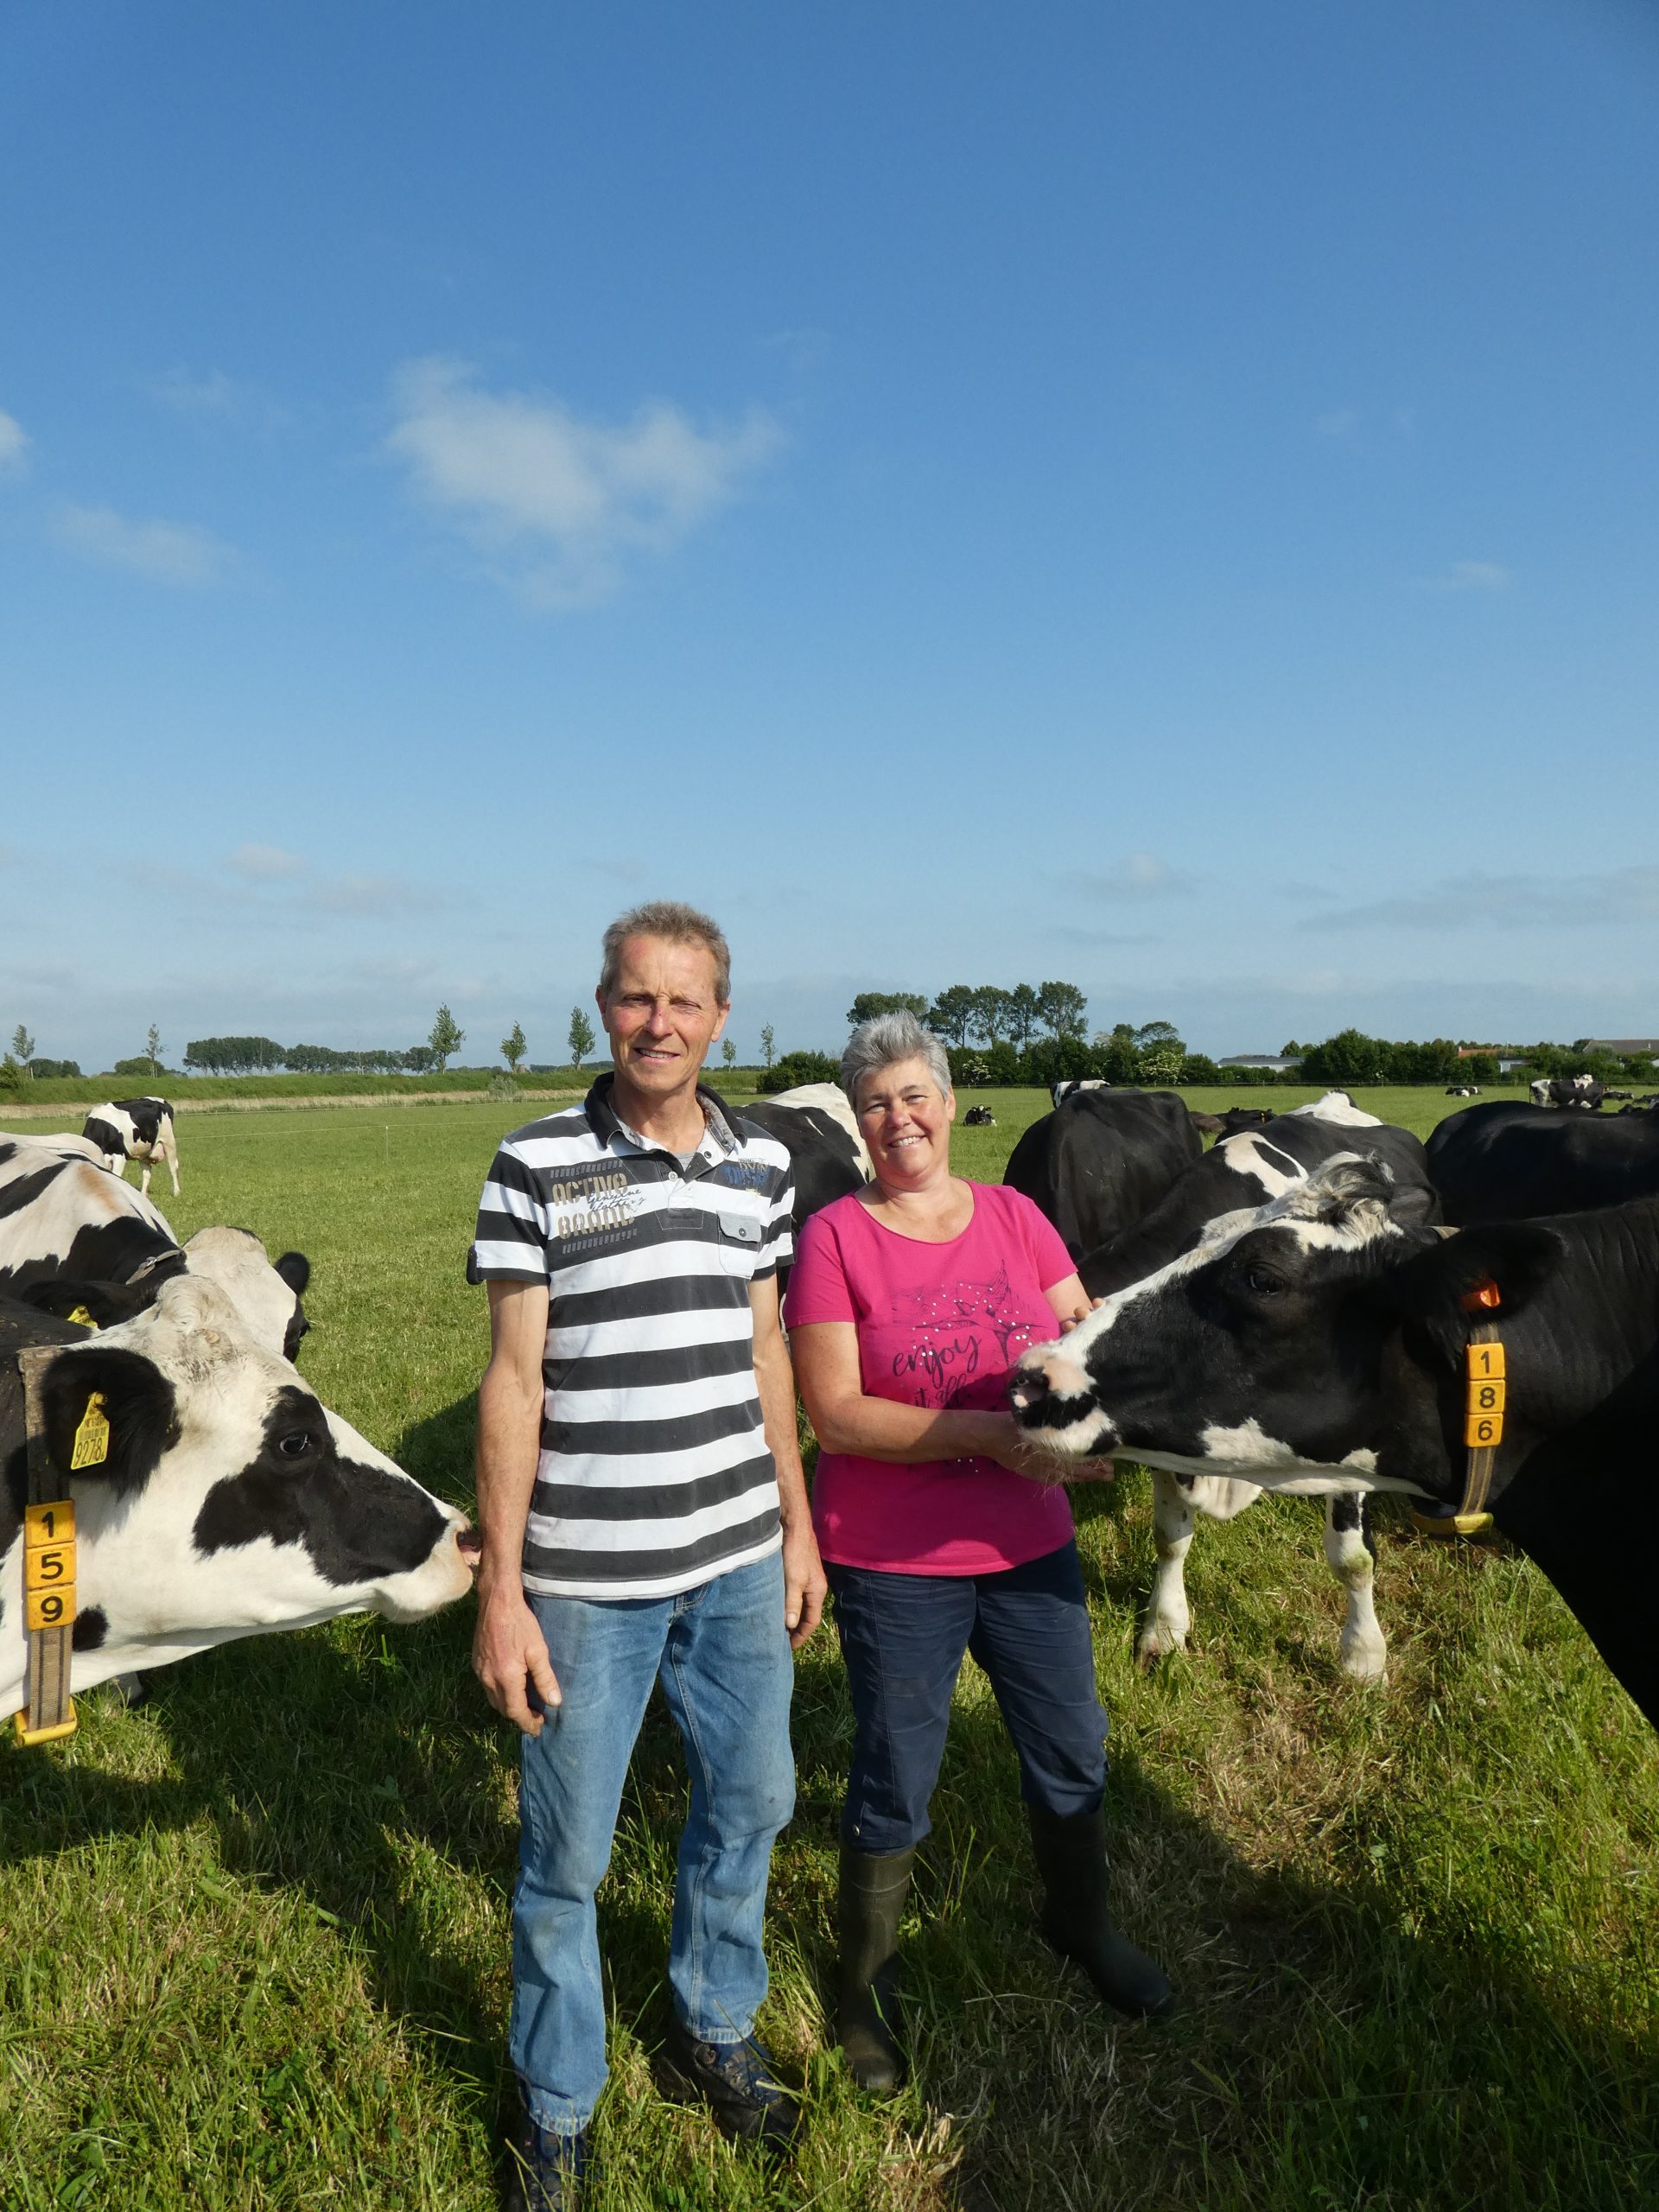 Melkveebedrijf Van den Hout in Nieuwvliet